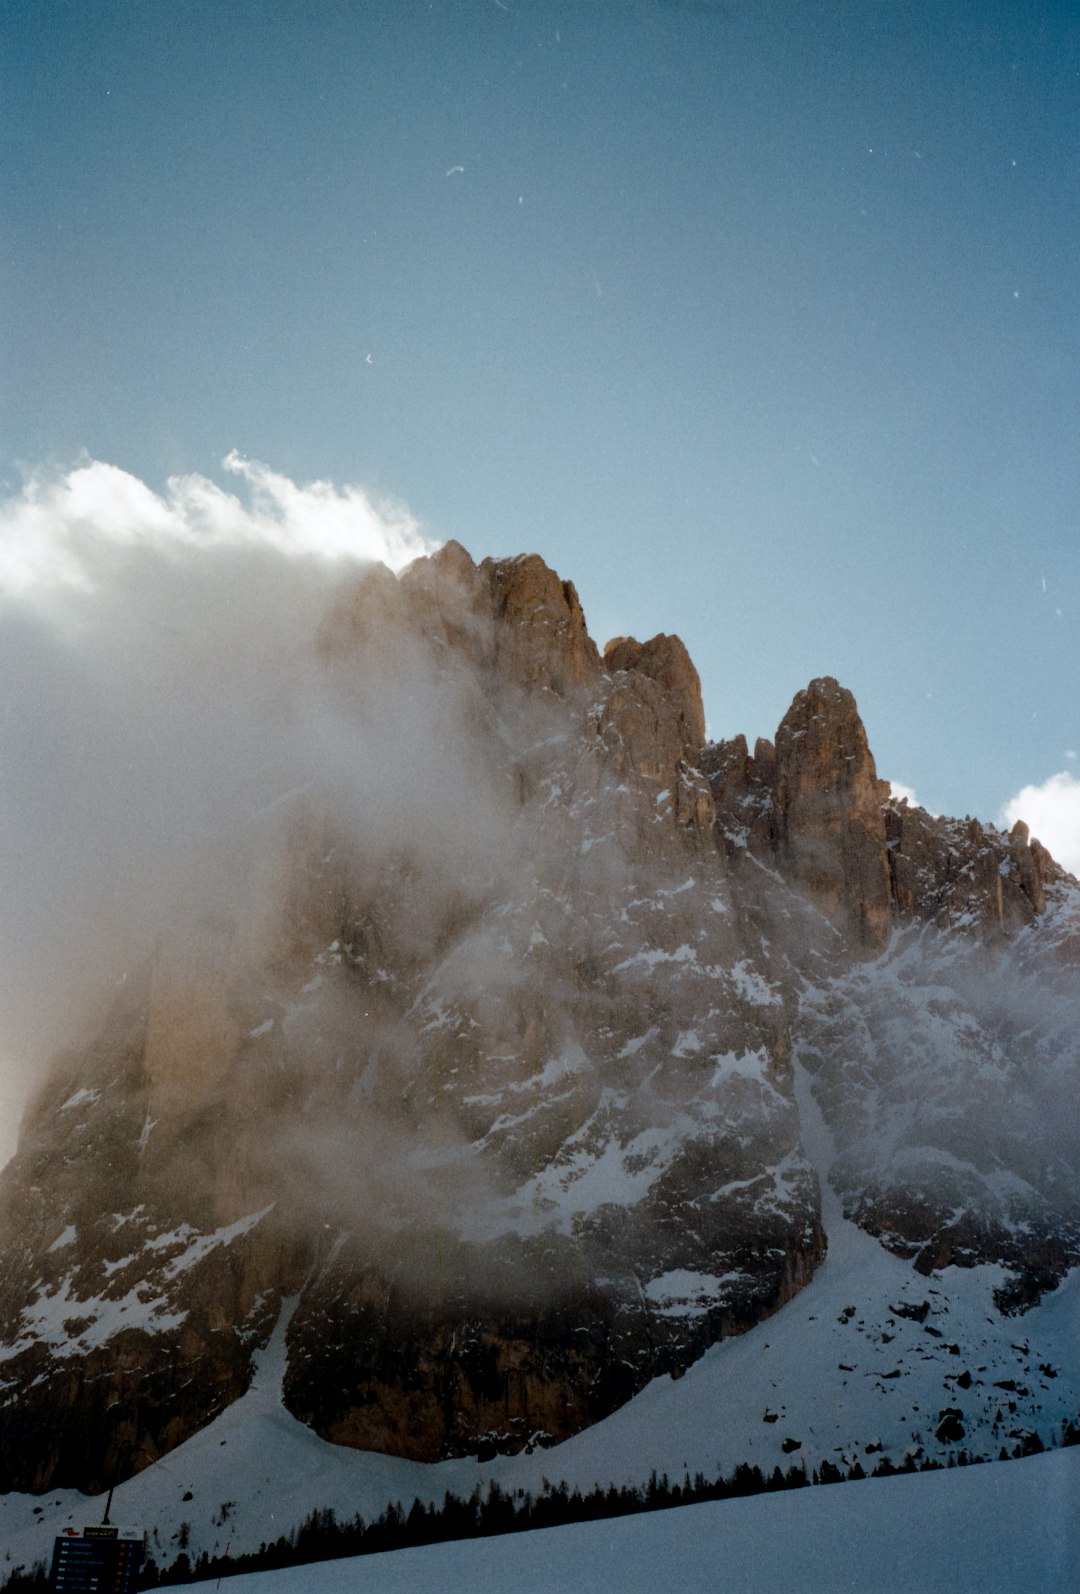 Mountain range photo spot Monte Pana Dolomites